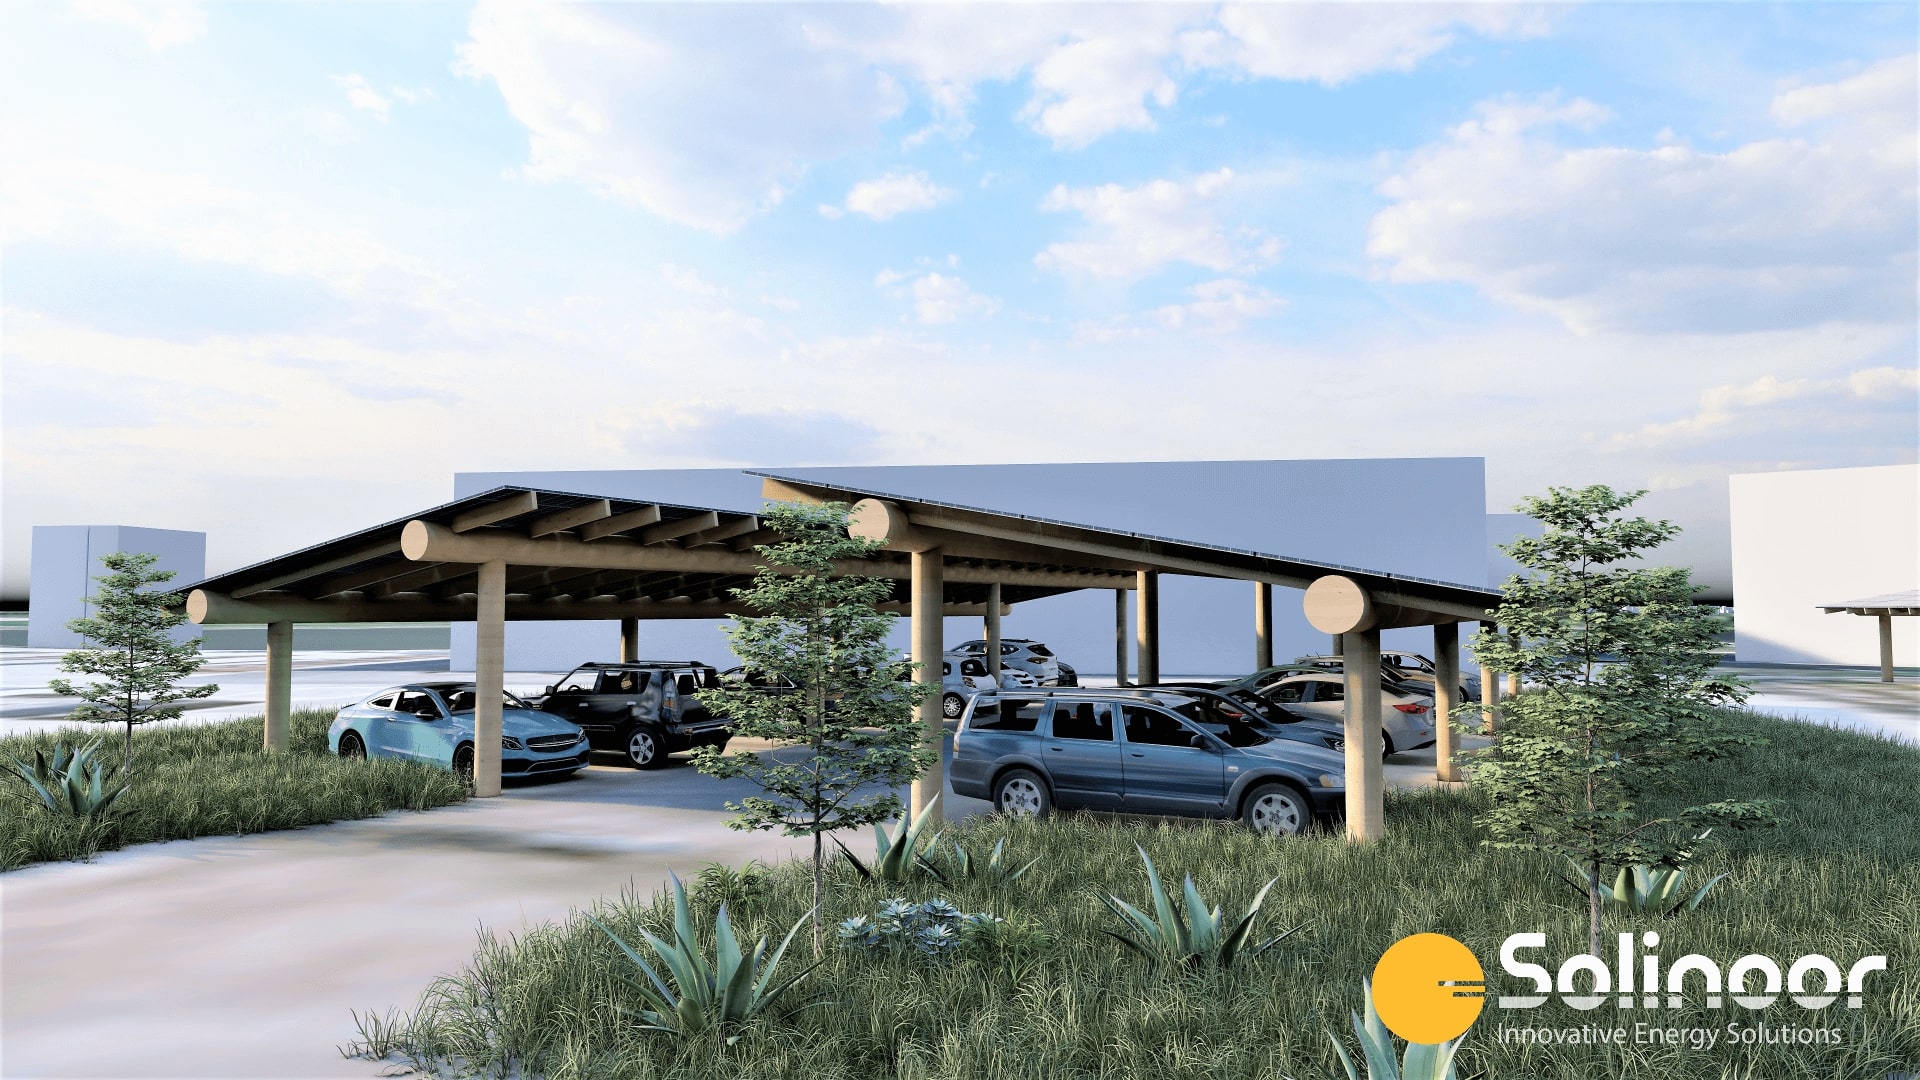 Solinoor zonnecarport IJzendoorn in Gelderland - 3D render